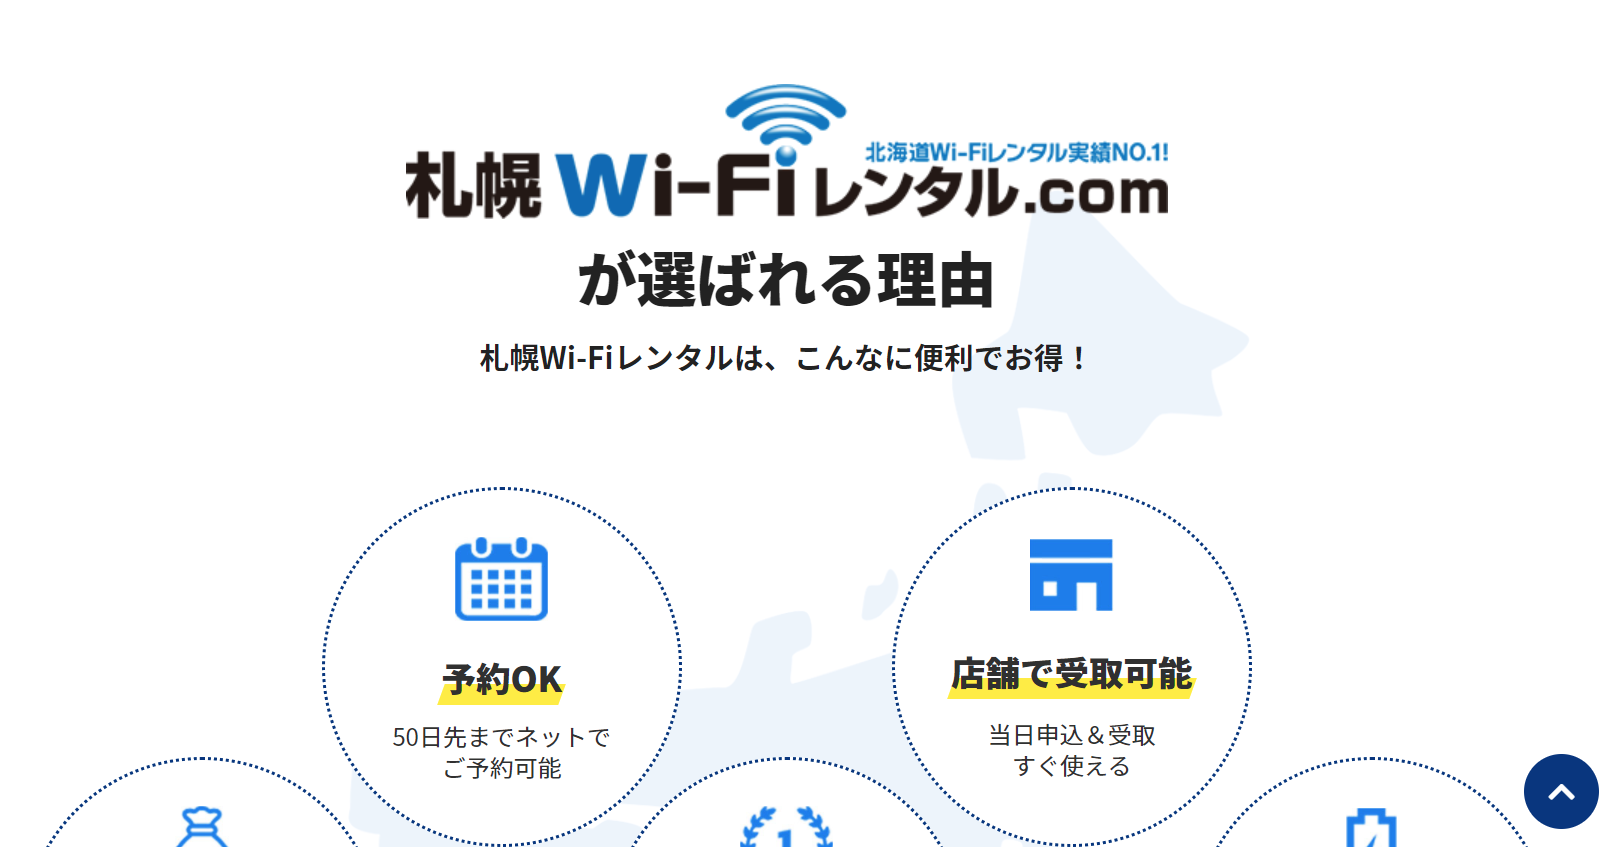 株式会社ノースコミュニケーションの札幌Wi-Fi レンタル.comサービス